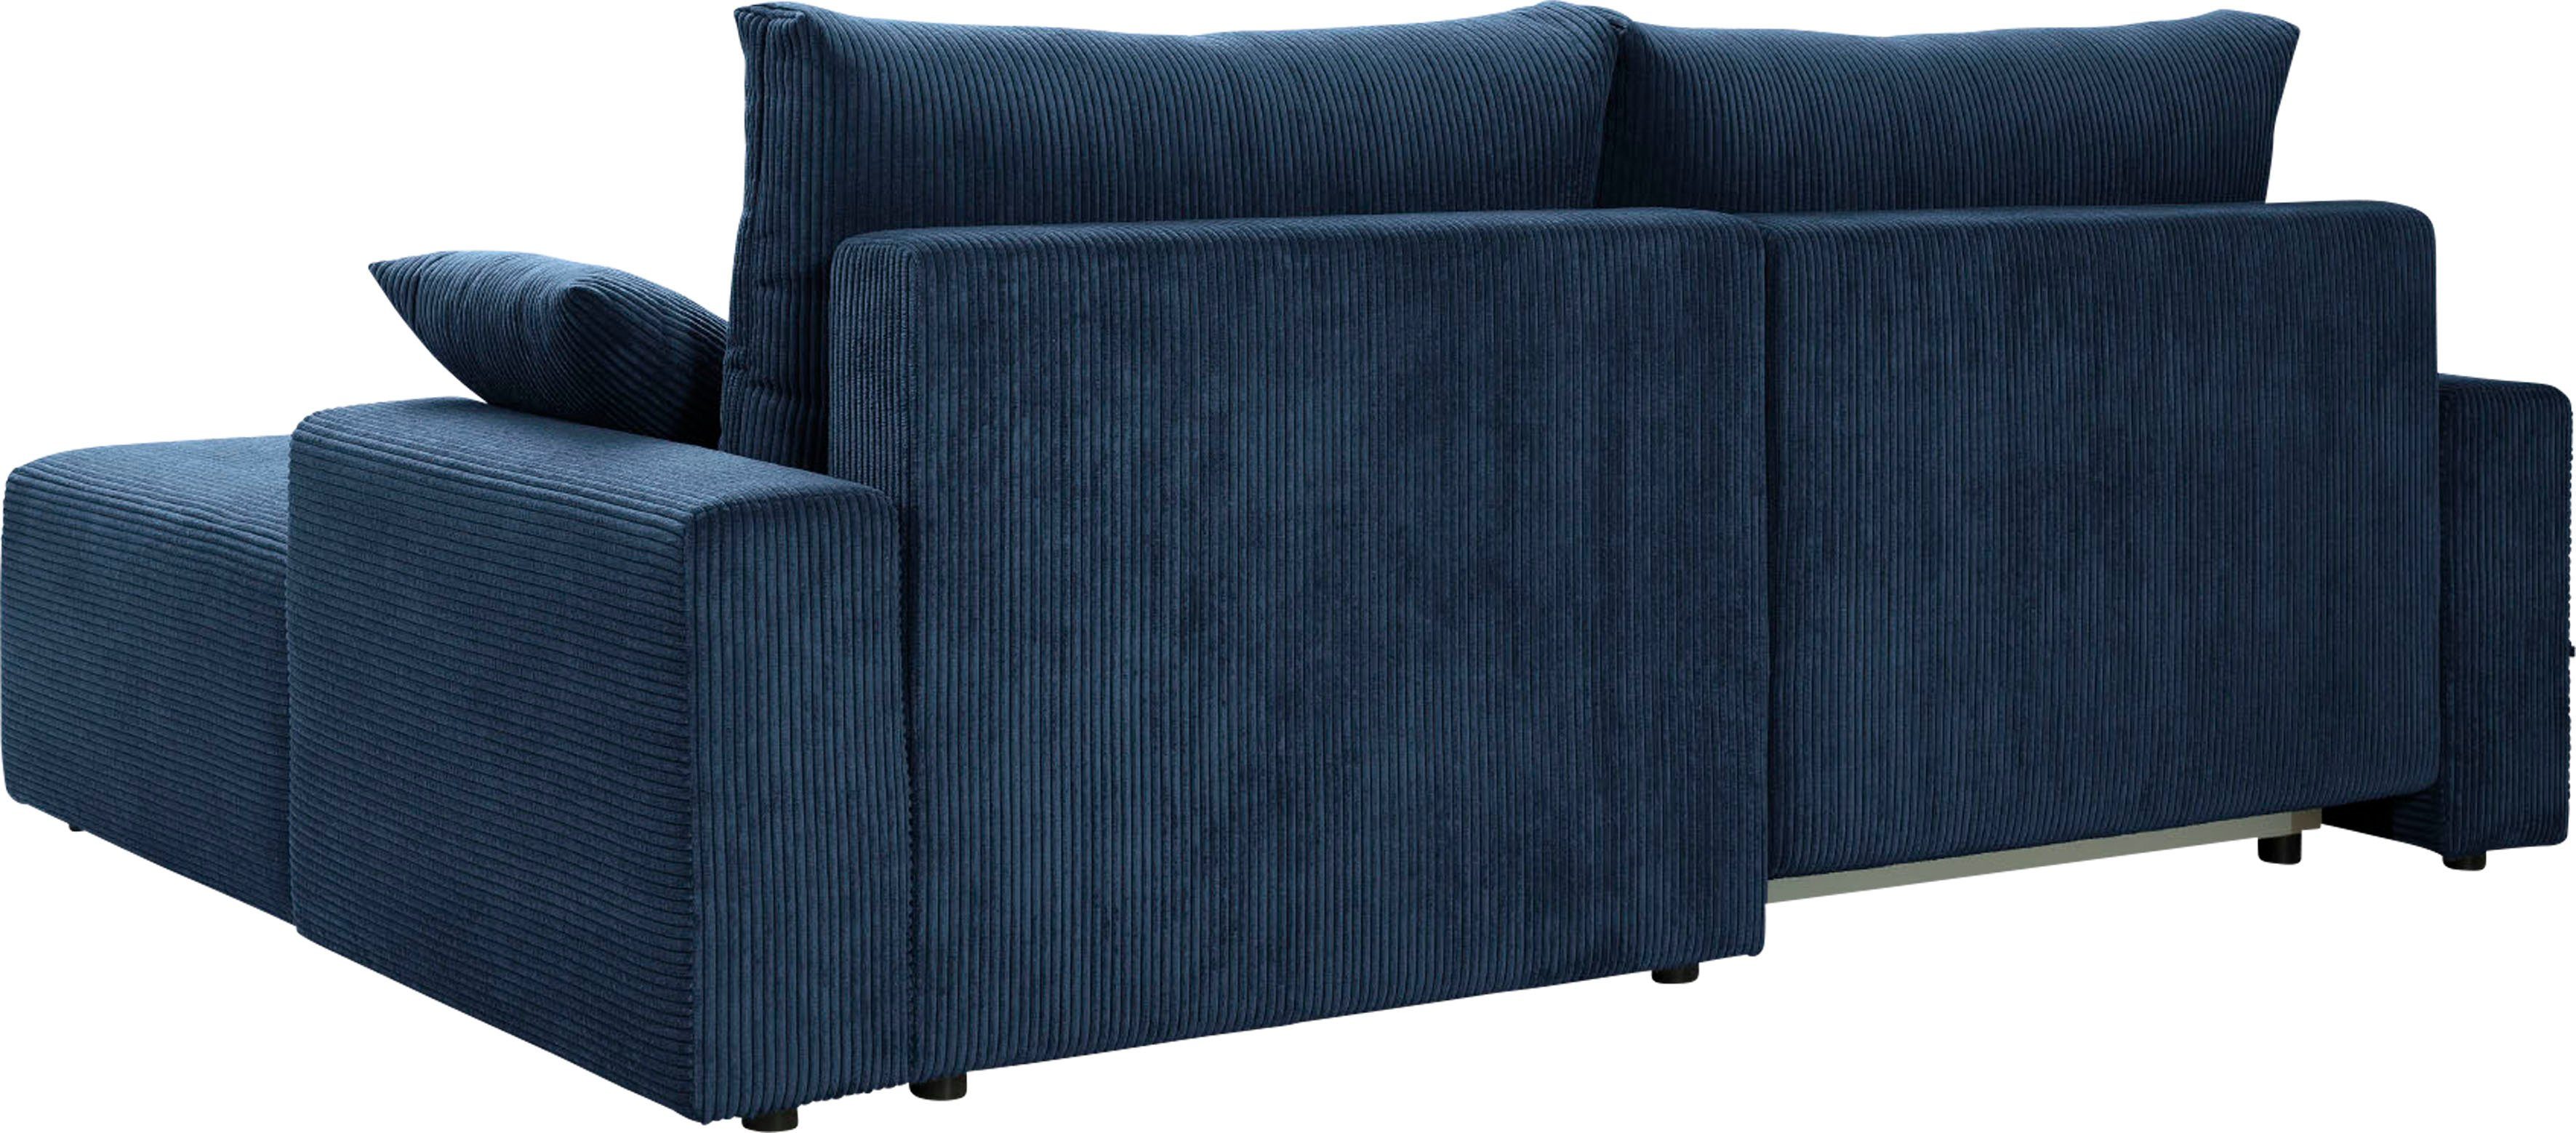 exxpo - sofa fashion Ecksofa Cord-Farben in navy und Orinoko, verschiedenen Bettfunktion Bettkasten inklusive